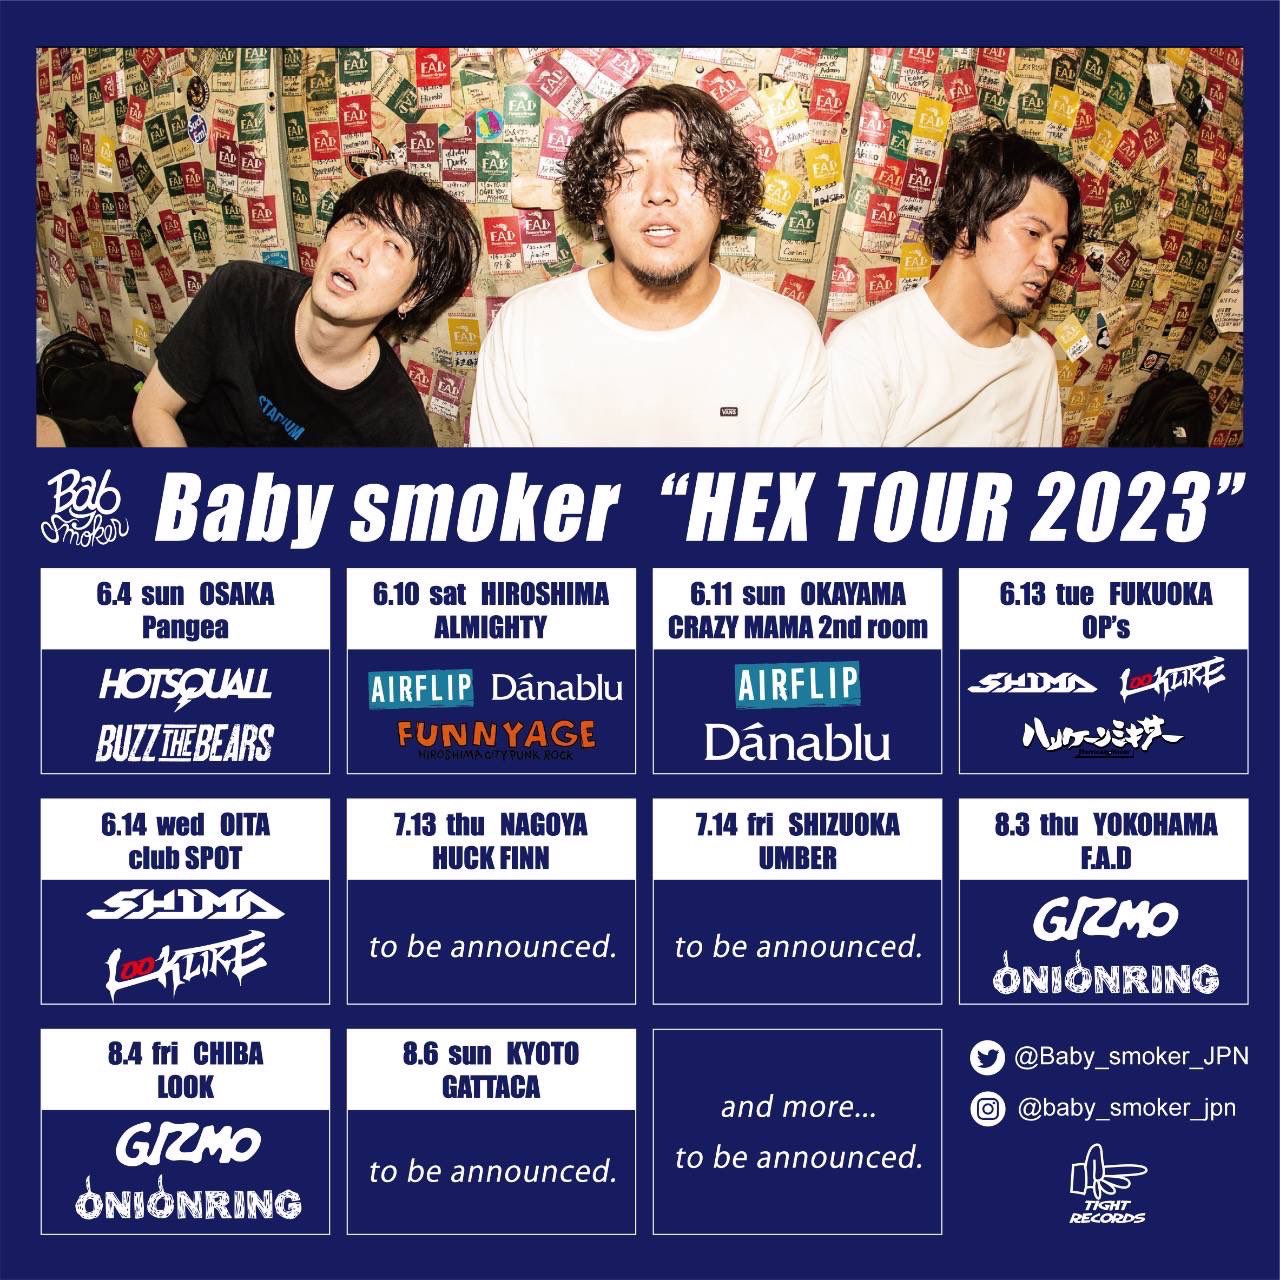 Baby smoker HEX TOUR 2023